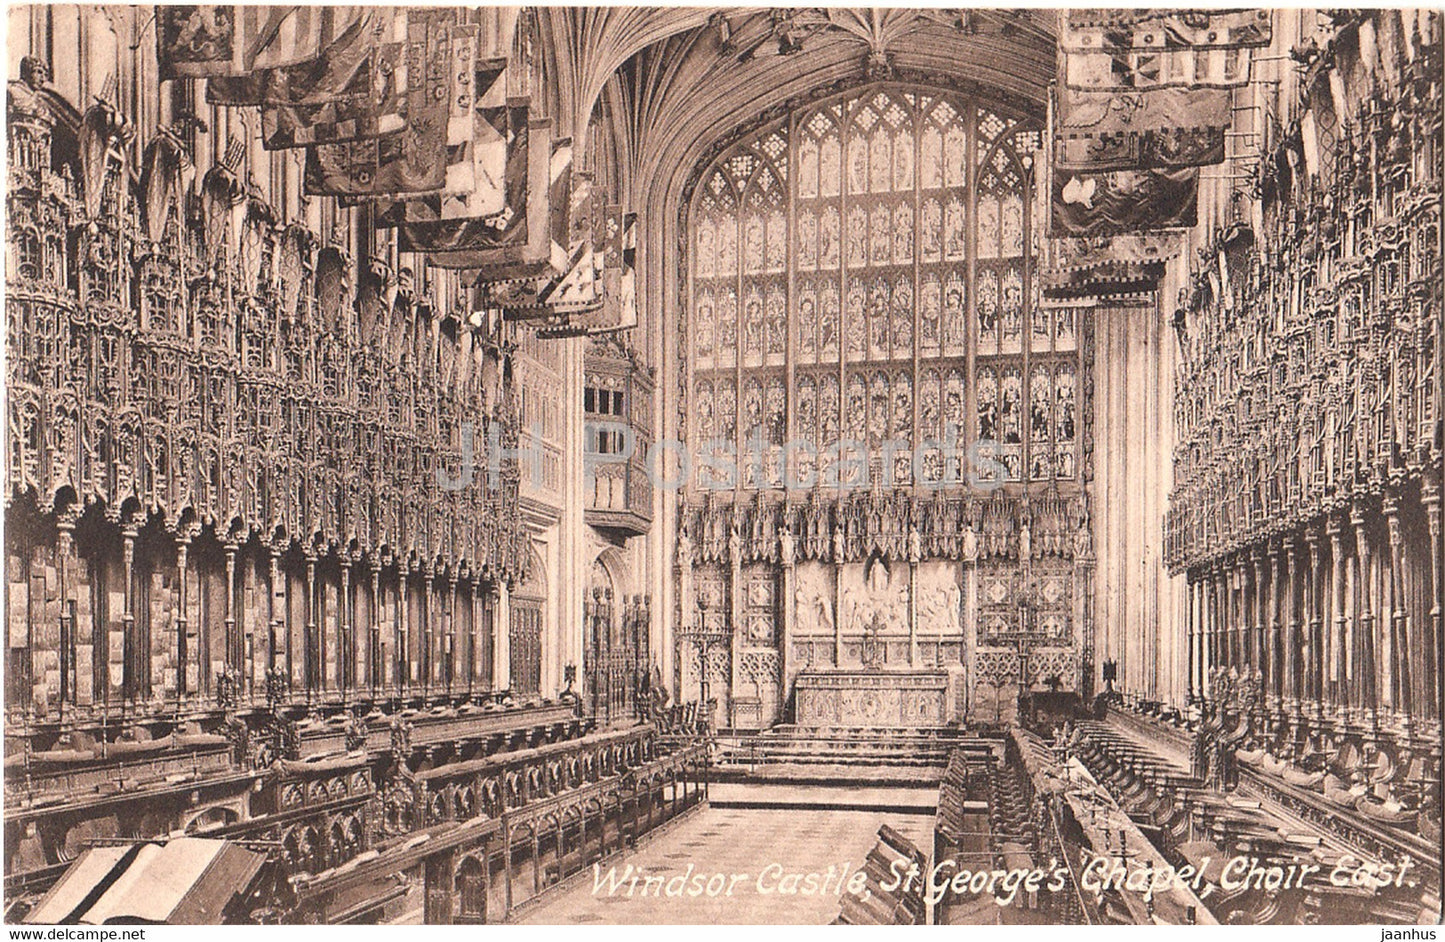 Windsor Castle - St George's Chapel - Choir East - 35393 - old postcard - England - United Kingdom - unused - JH Postcards